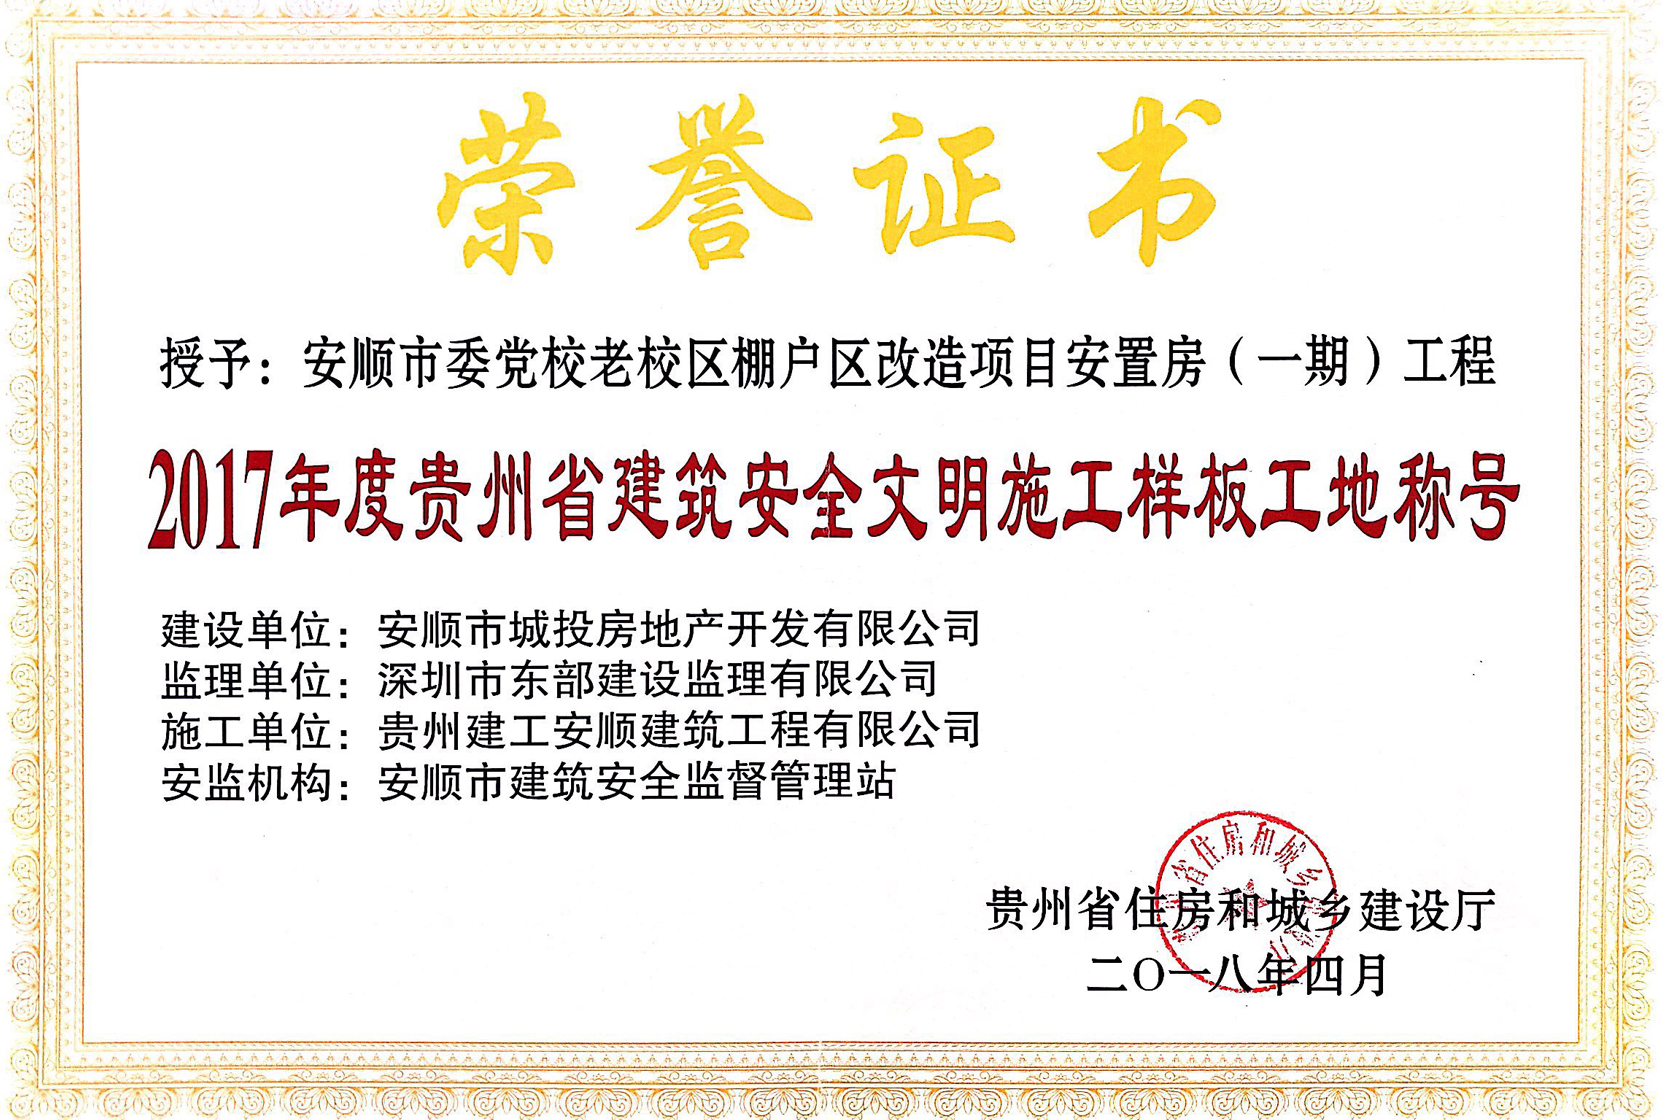 2017年度贵州省建筑安全文明施工样板工地称号